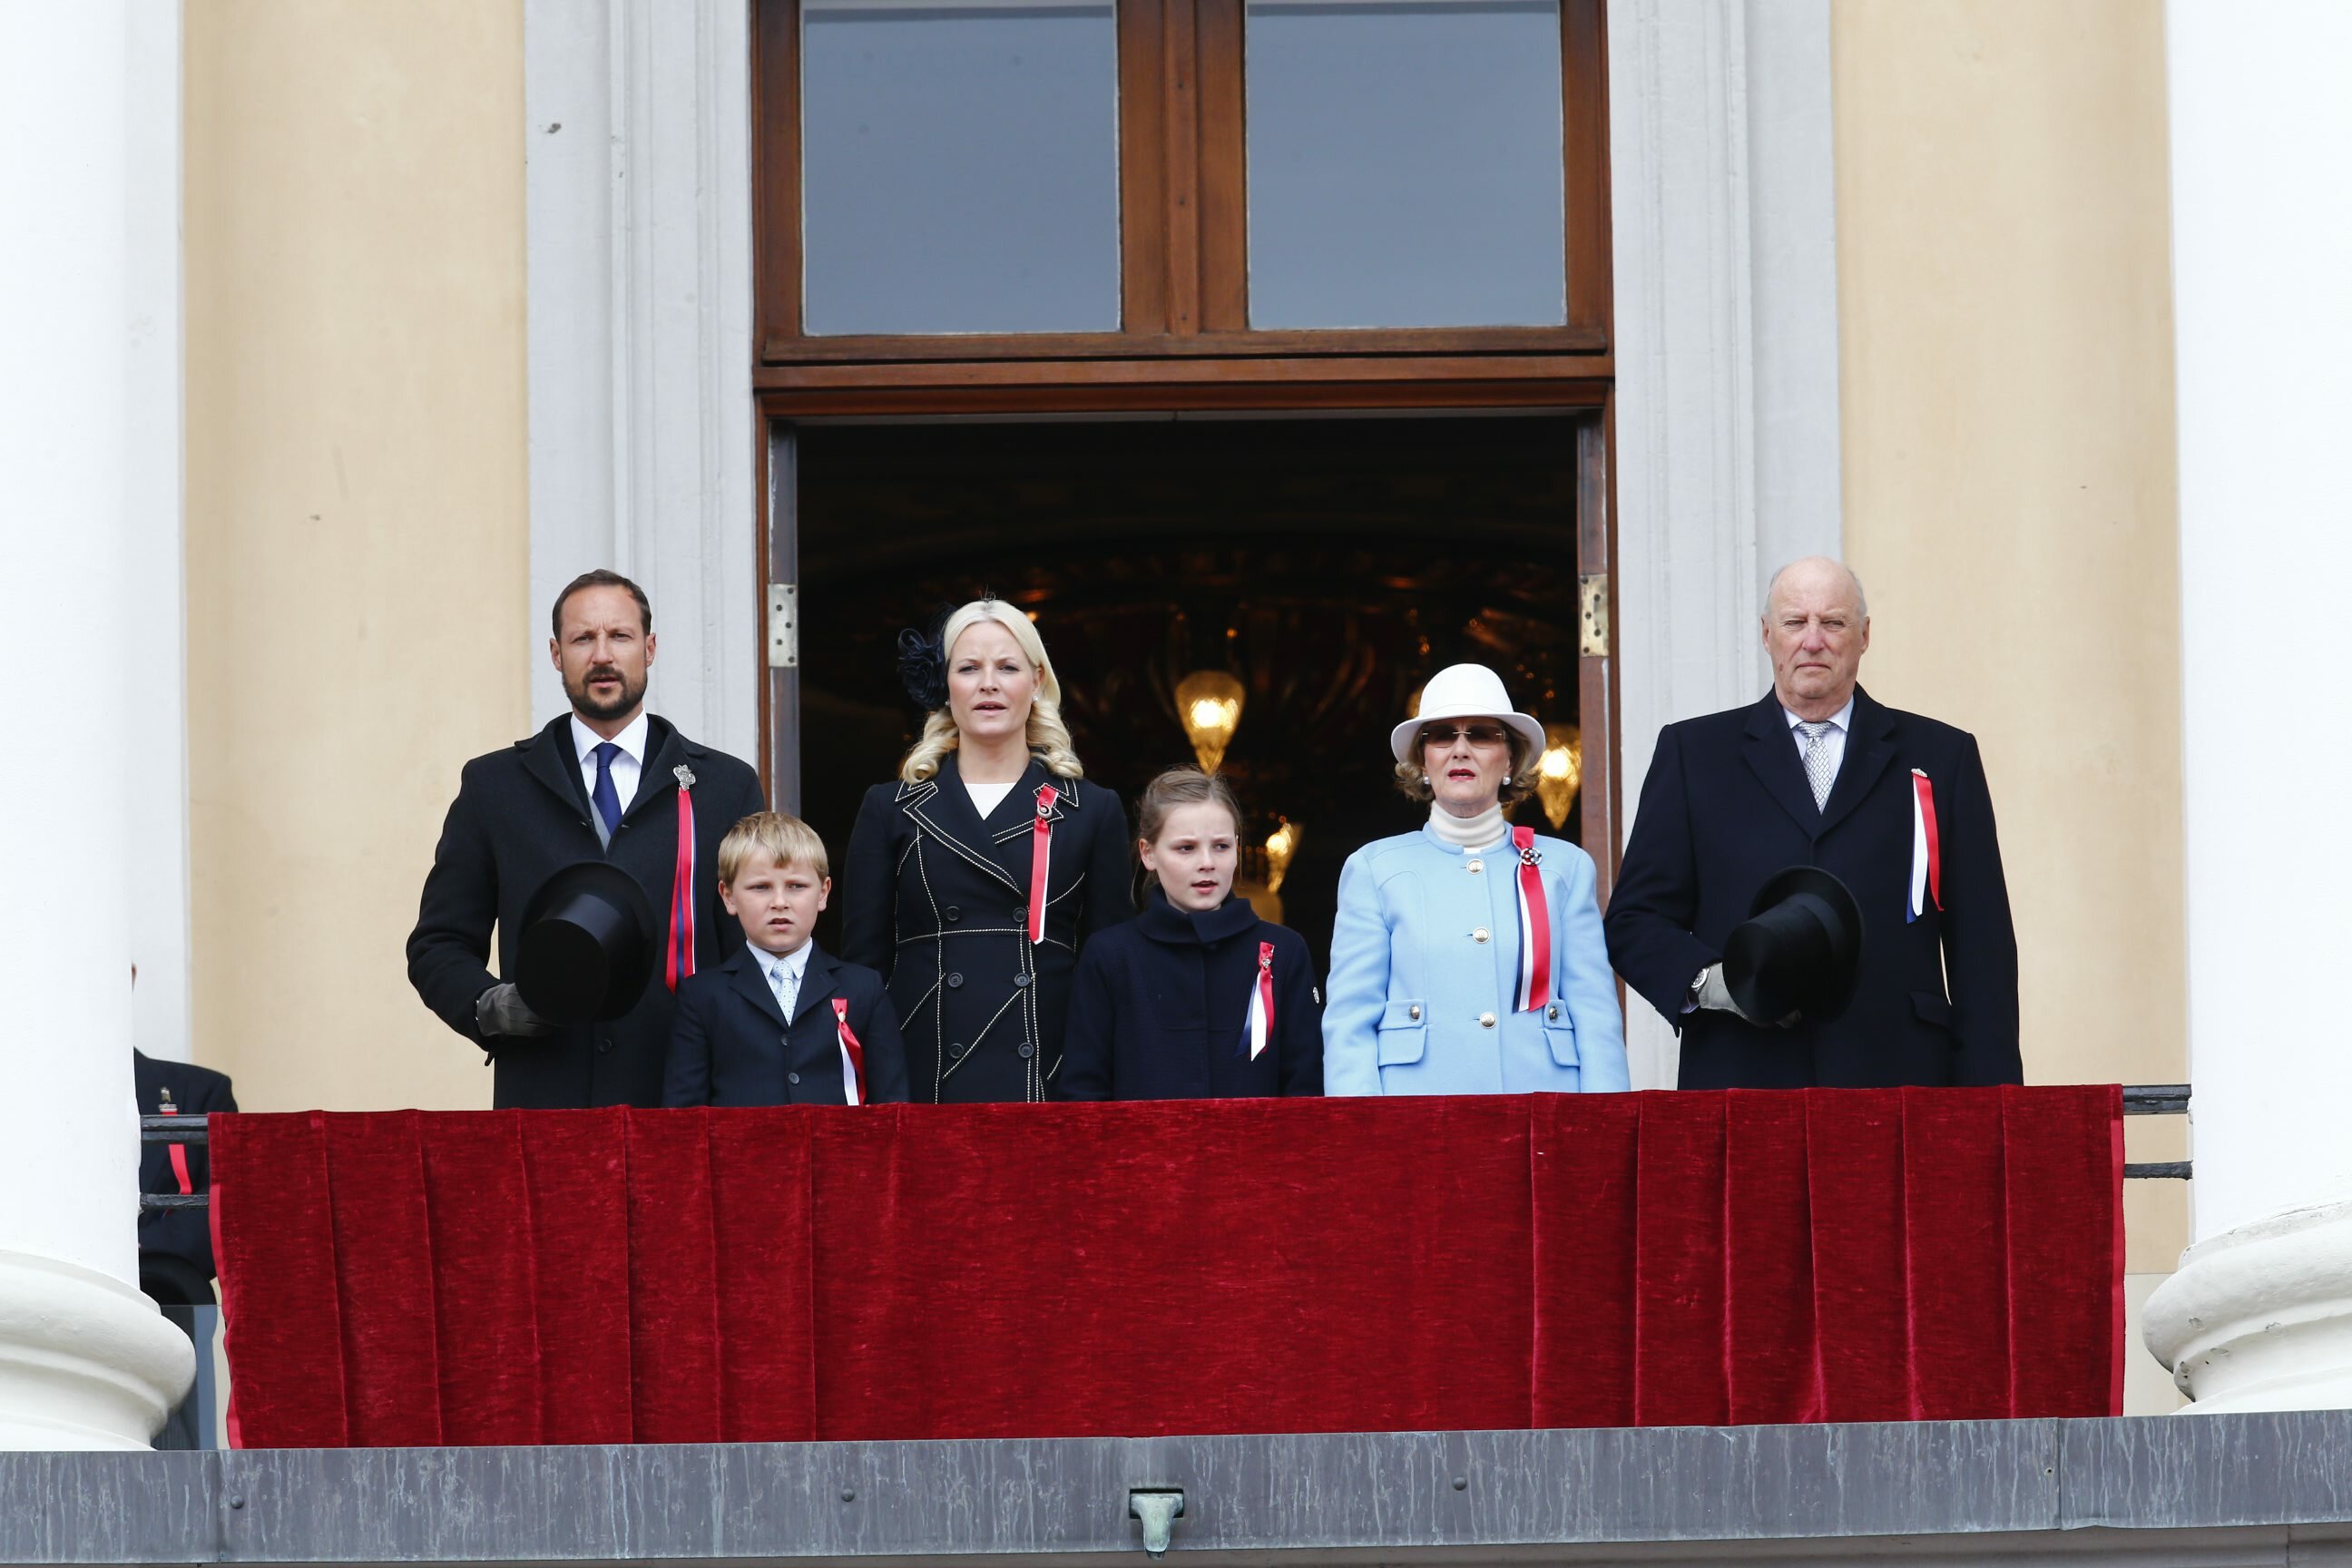 The Norwegian Royal Family